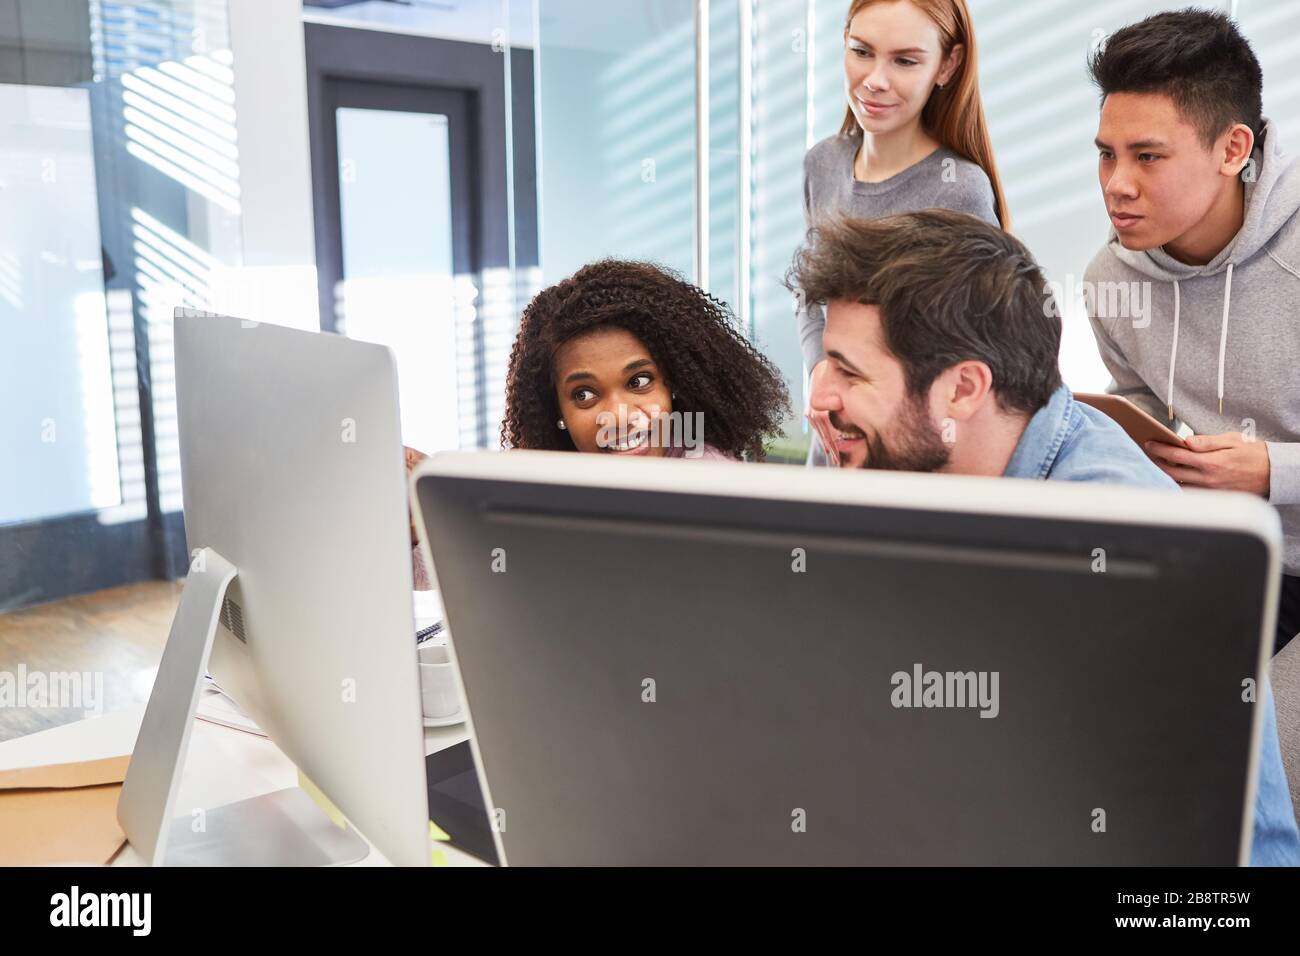 Informatikstudenten oder junge Programmierer auf Computern in einem IT-Schulungskurs Stockfoto